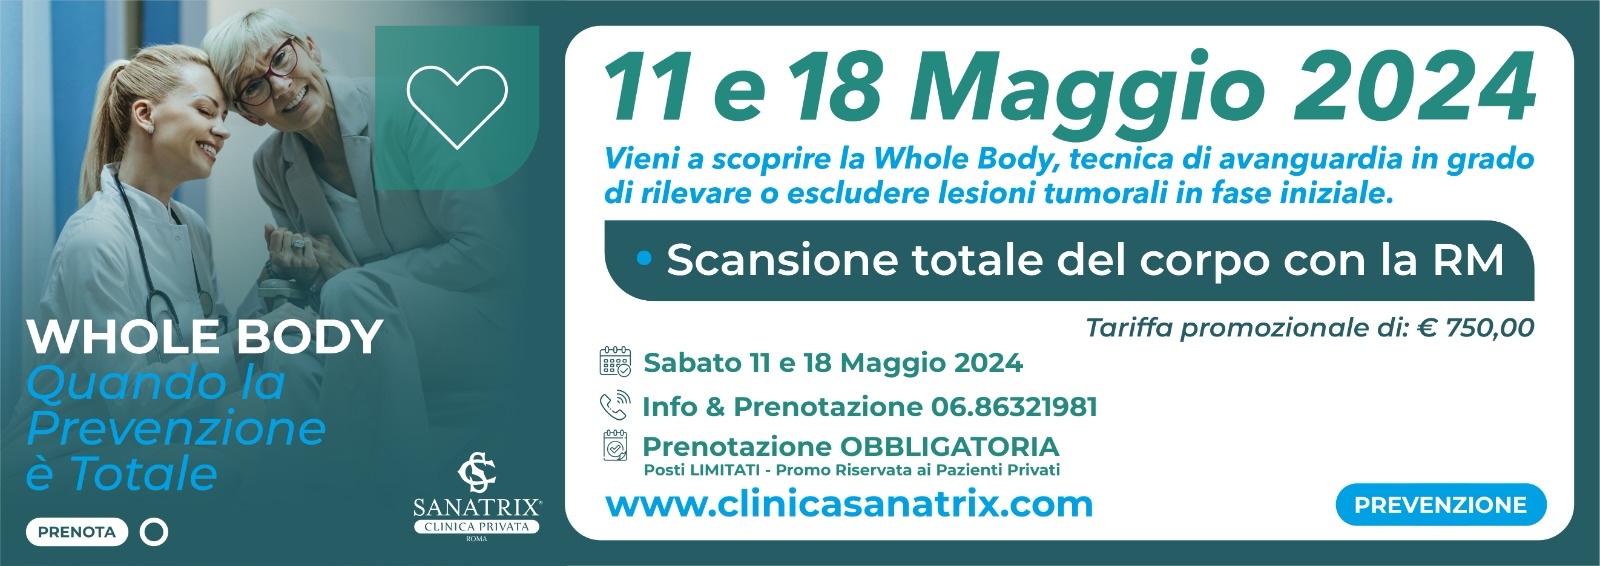 Prevenzione-Whole-Body-RM-Roma-Clinica-Sanatrix